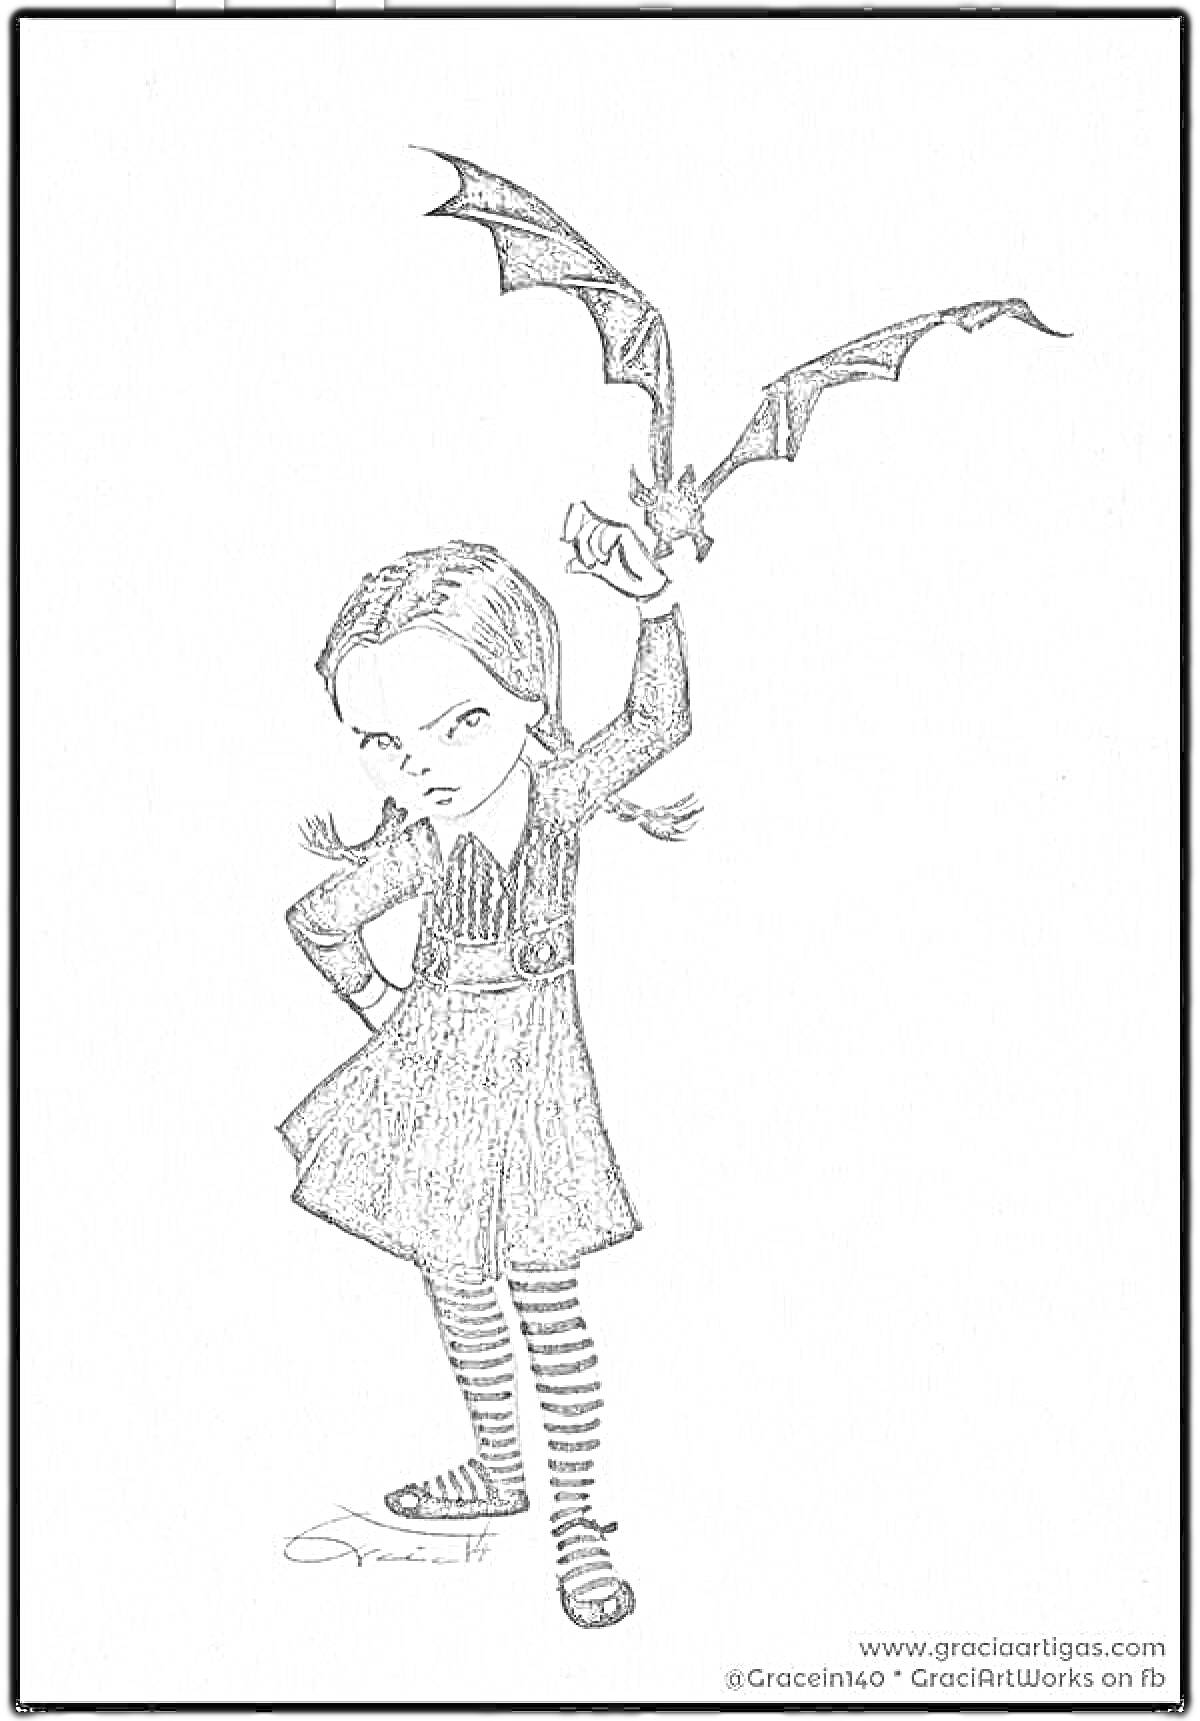 Раскраска Девочка в чёрной одежде с косичками, держащая летучую мышь